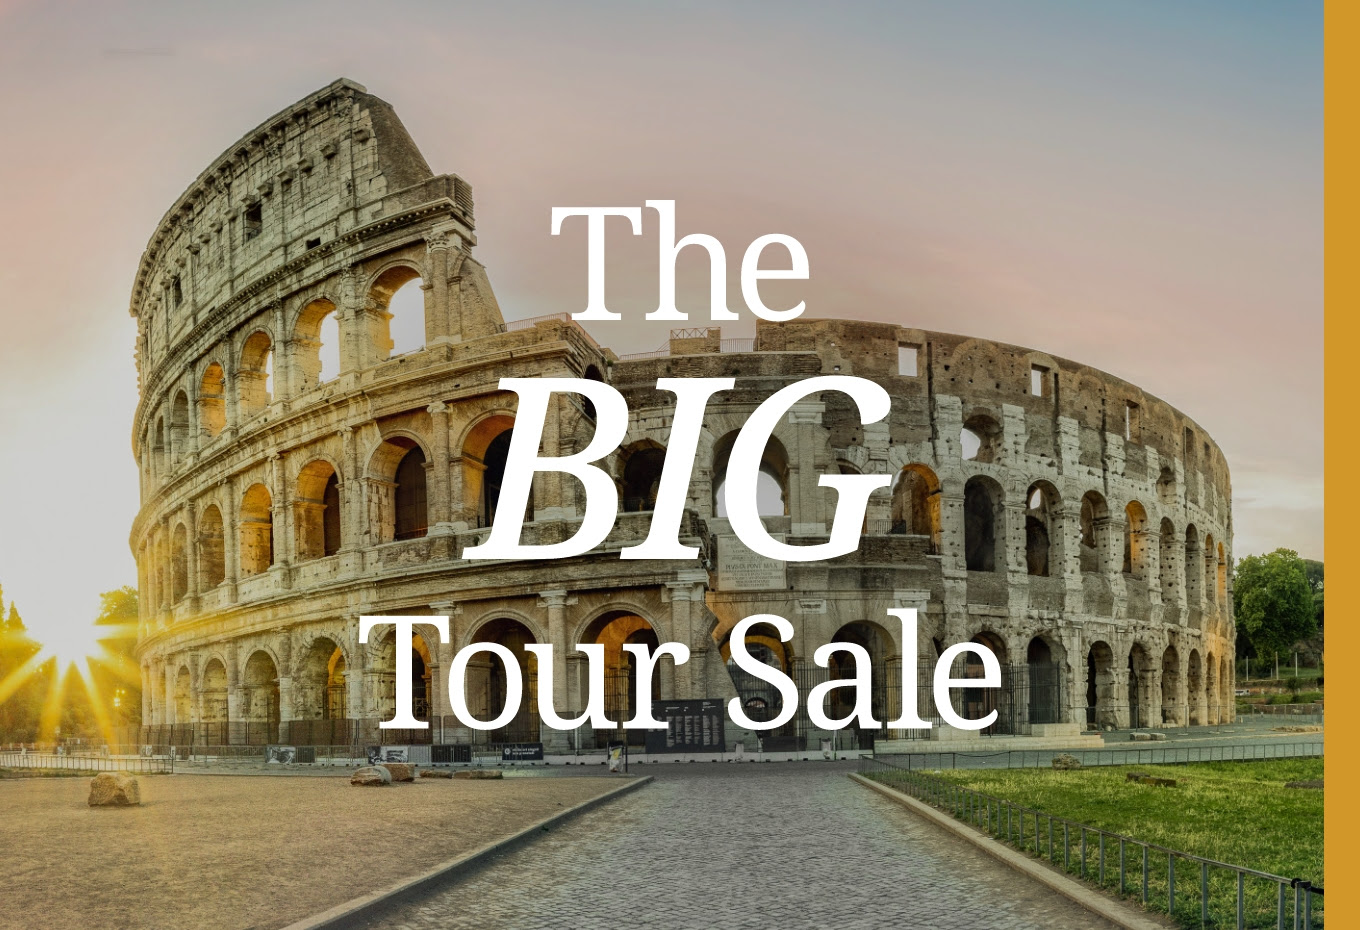 The Big Tour Sale